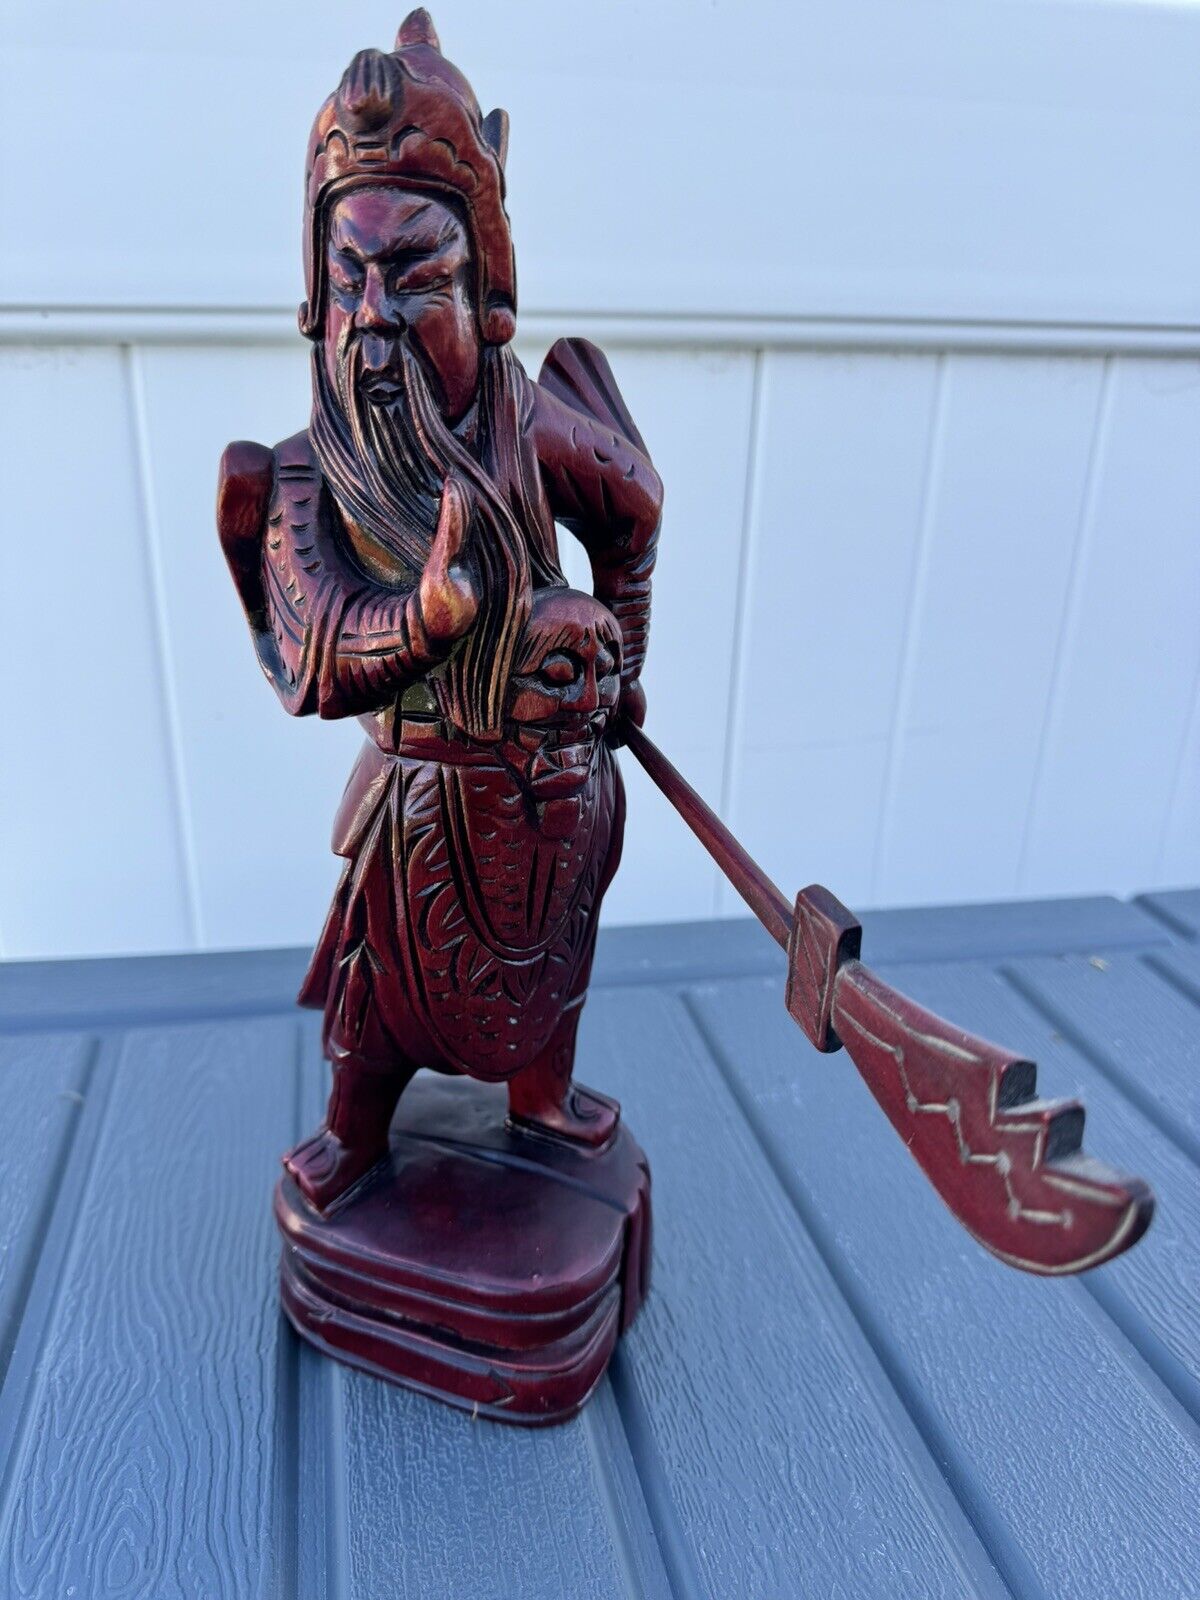 Wood Incense Burner Holder Statue Folk Art Asian Man Carved Figurine